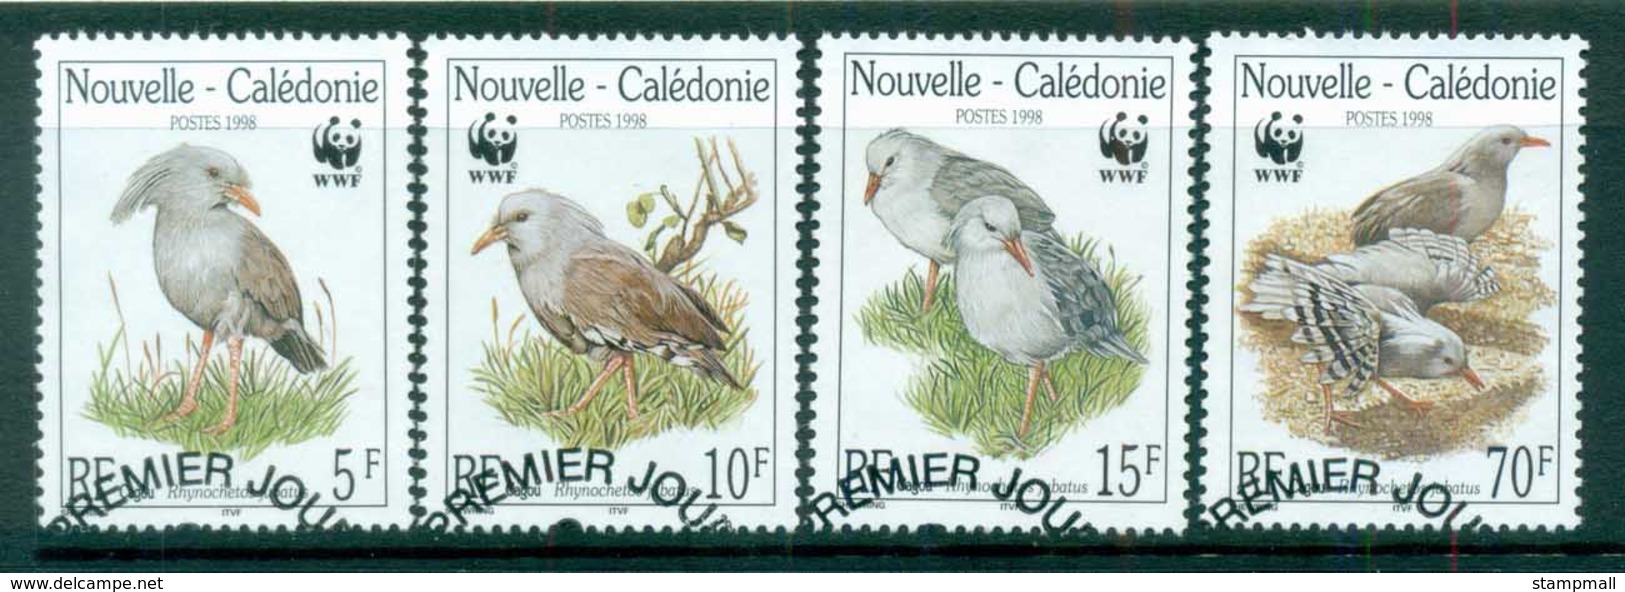 New Caledonia 1998 WWF Kagu FU Lot81482 - Unused Stamps